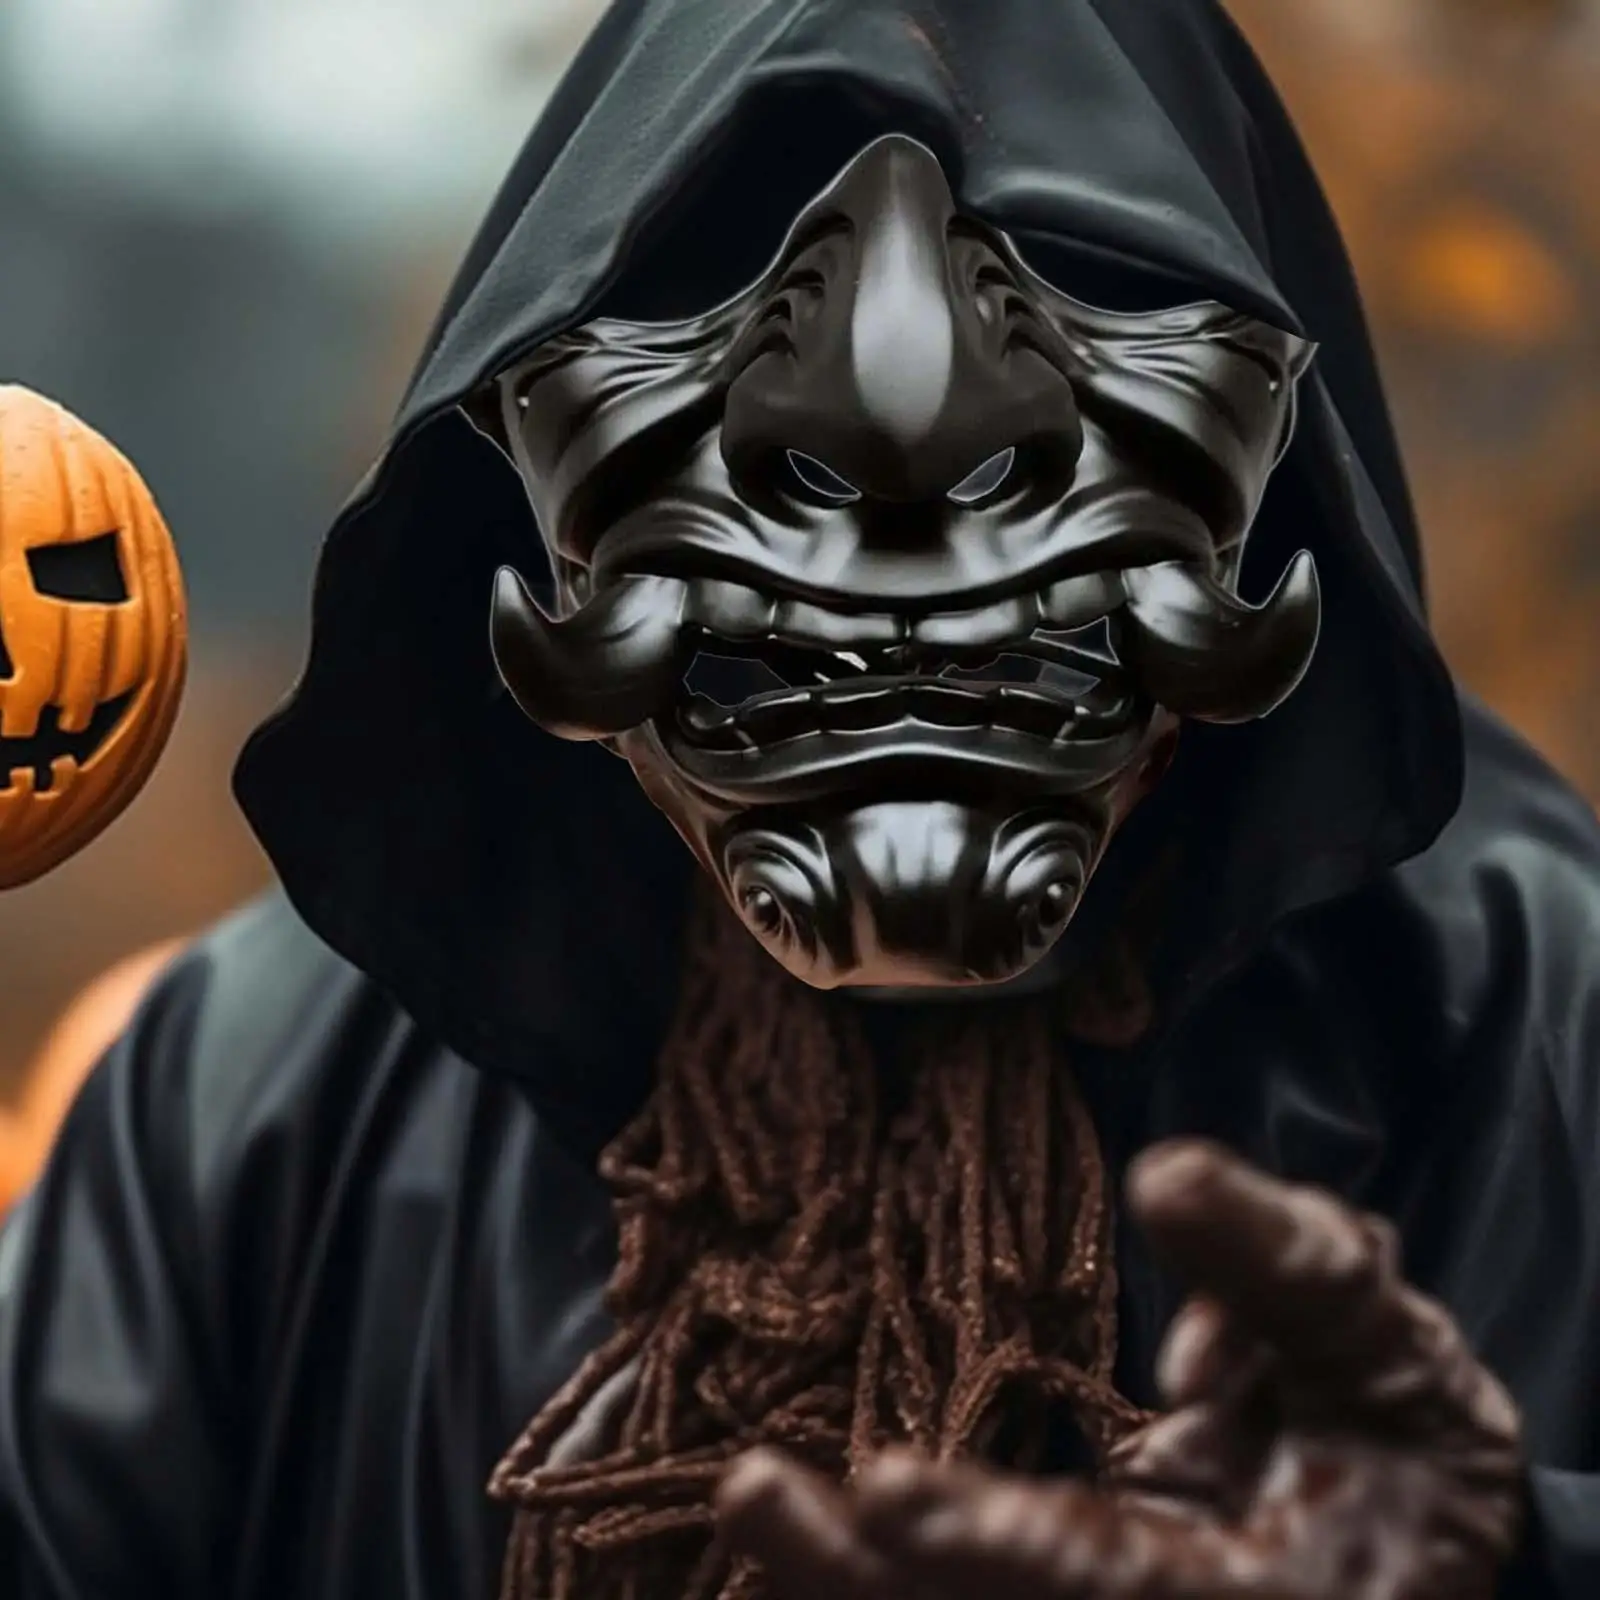 

Голова маска призрака 3D реалистичный реквизит из смолы Карнавальная маска для Хэллоуина японская маска для косплея фестиваля шоу взрослых мужчин